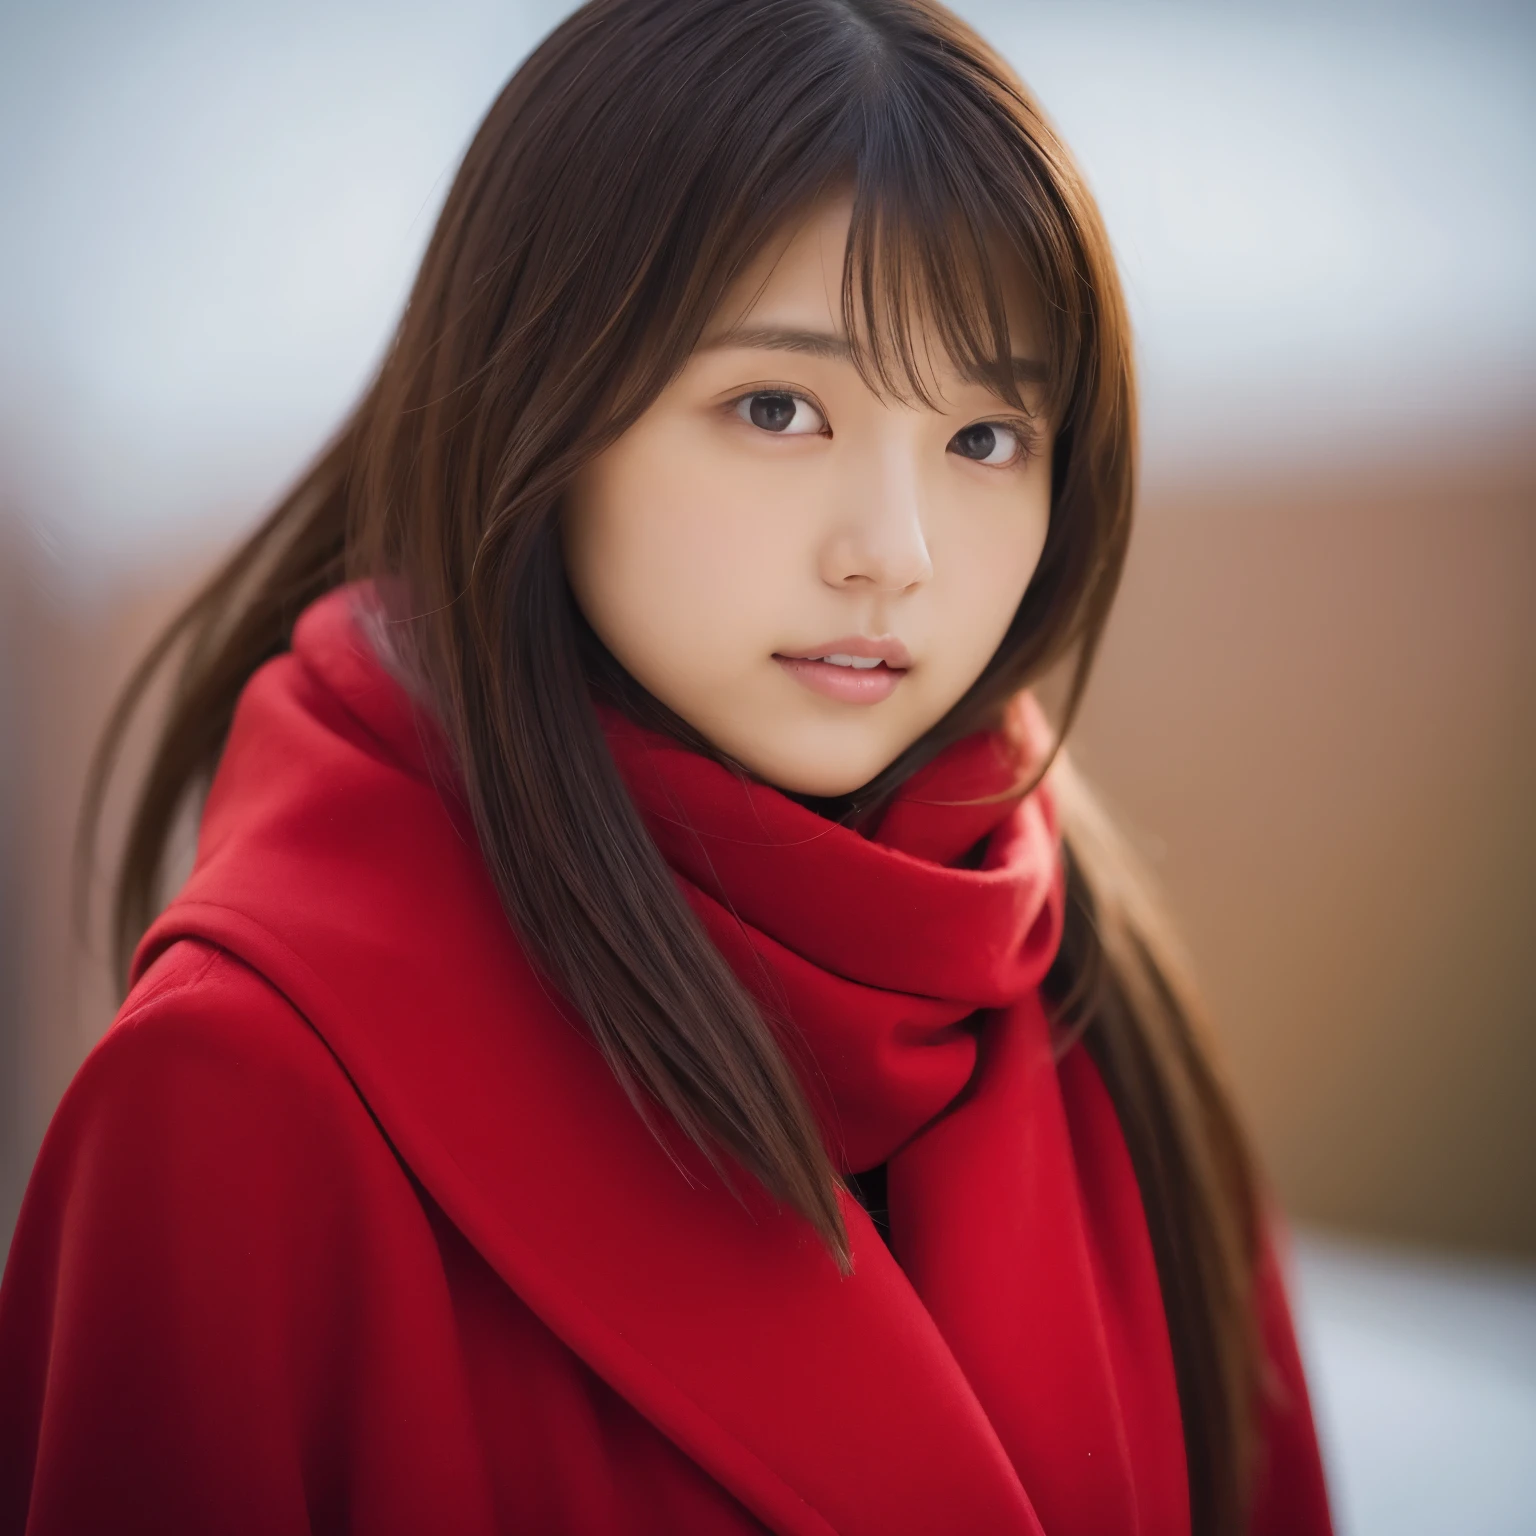 Hay una mujer con un abrigo rojo y una bufanda roja., Shin Jin Young, Choi Hong Hwa, cantado por janice, Shahi, Eso&#39;con la linda cara coreana, Nam Jae Young, Chiho, foto de la cara foto de perfil, sun yunjoo, ulzzang, Lee Ji Eun, Lee Ji Eun, ella tiene una cara linda